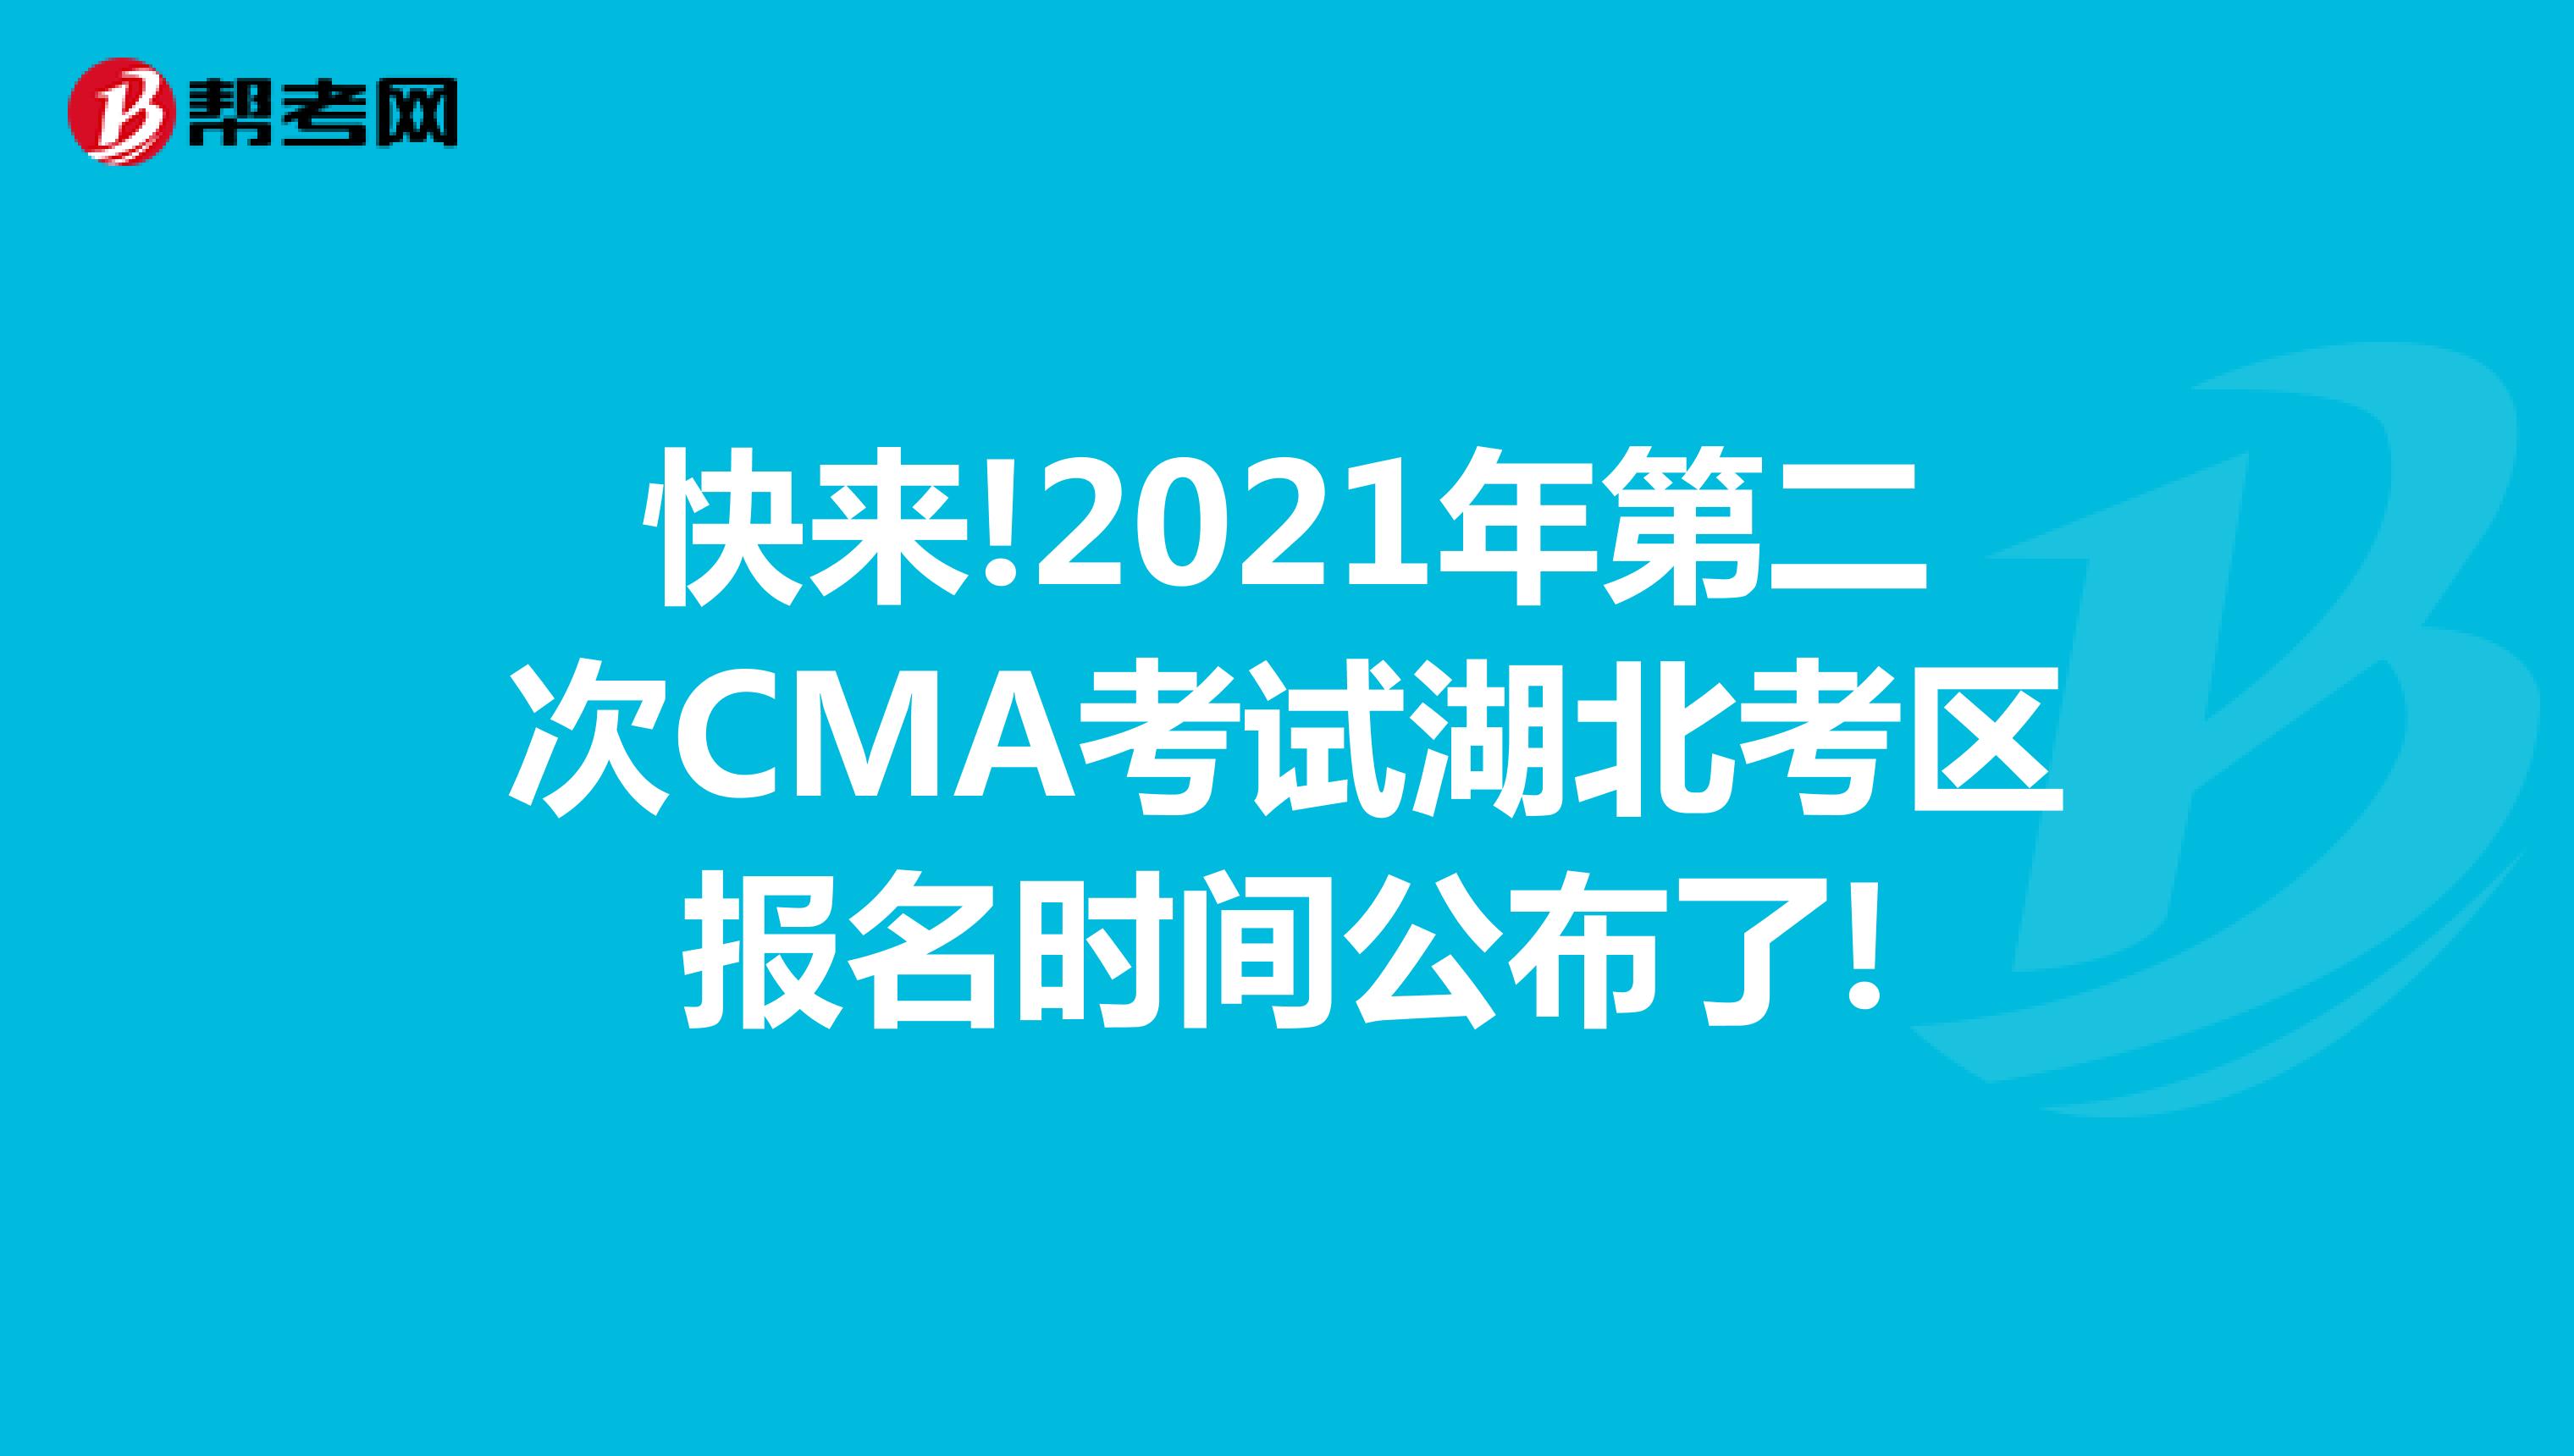 快来!2021年第二次CMA考试湖北考区报名时间公布了!